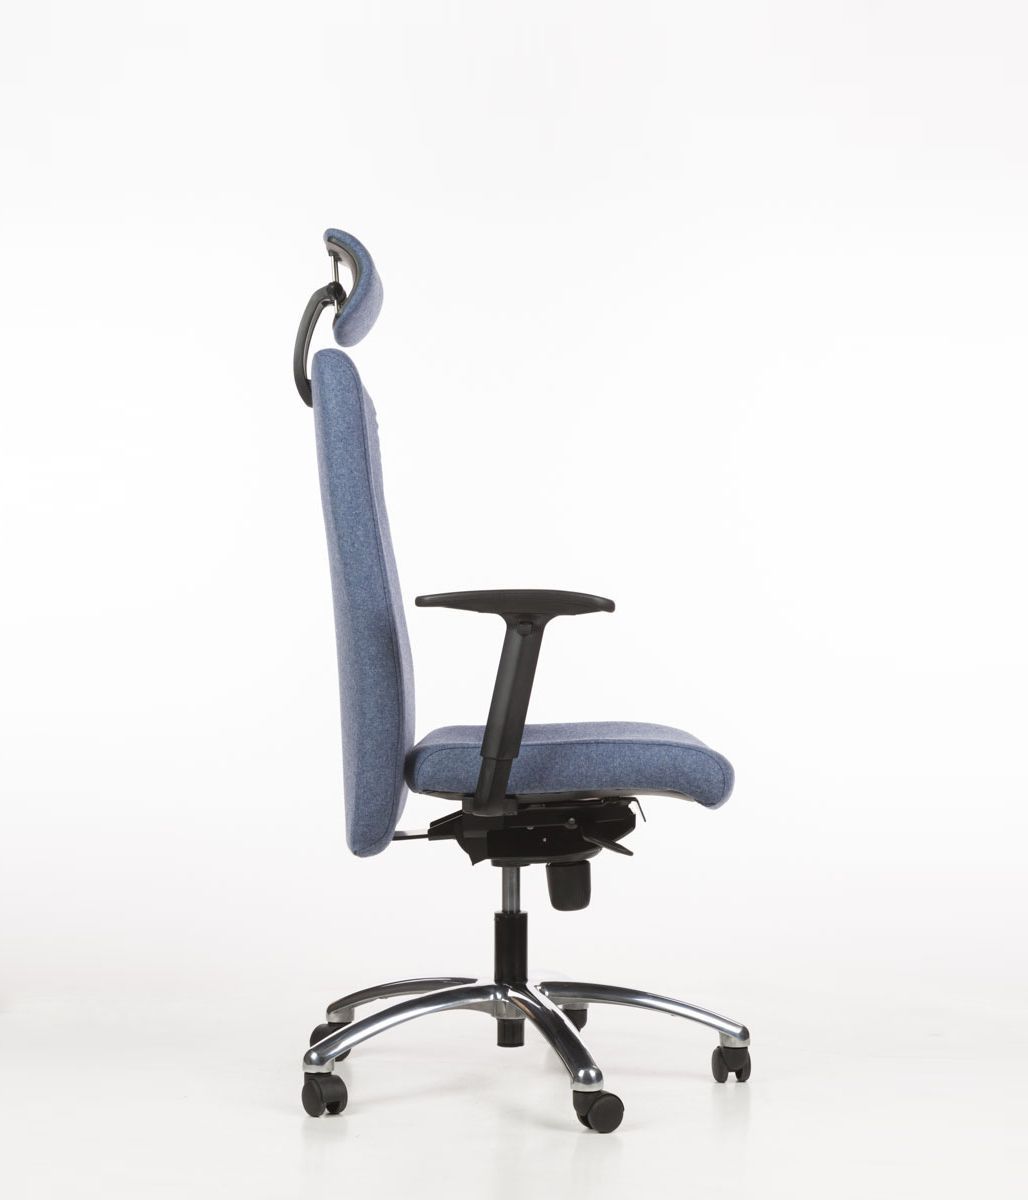 Przedstawiamy fotel z atestem do pracy 24/7. Fotel ma obustronnie tapicerowane oparcie, mechanizm synchroniczny, regulowane podłokietniki. Duzy wybór kolorów. Serdecznie zapraszamy.